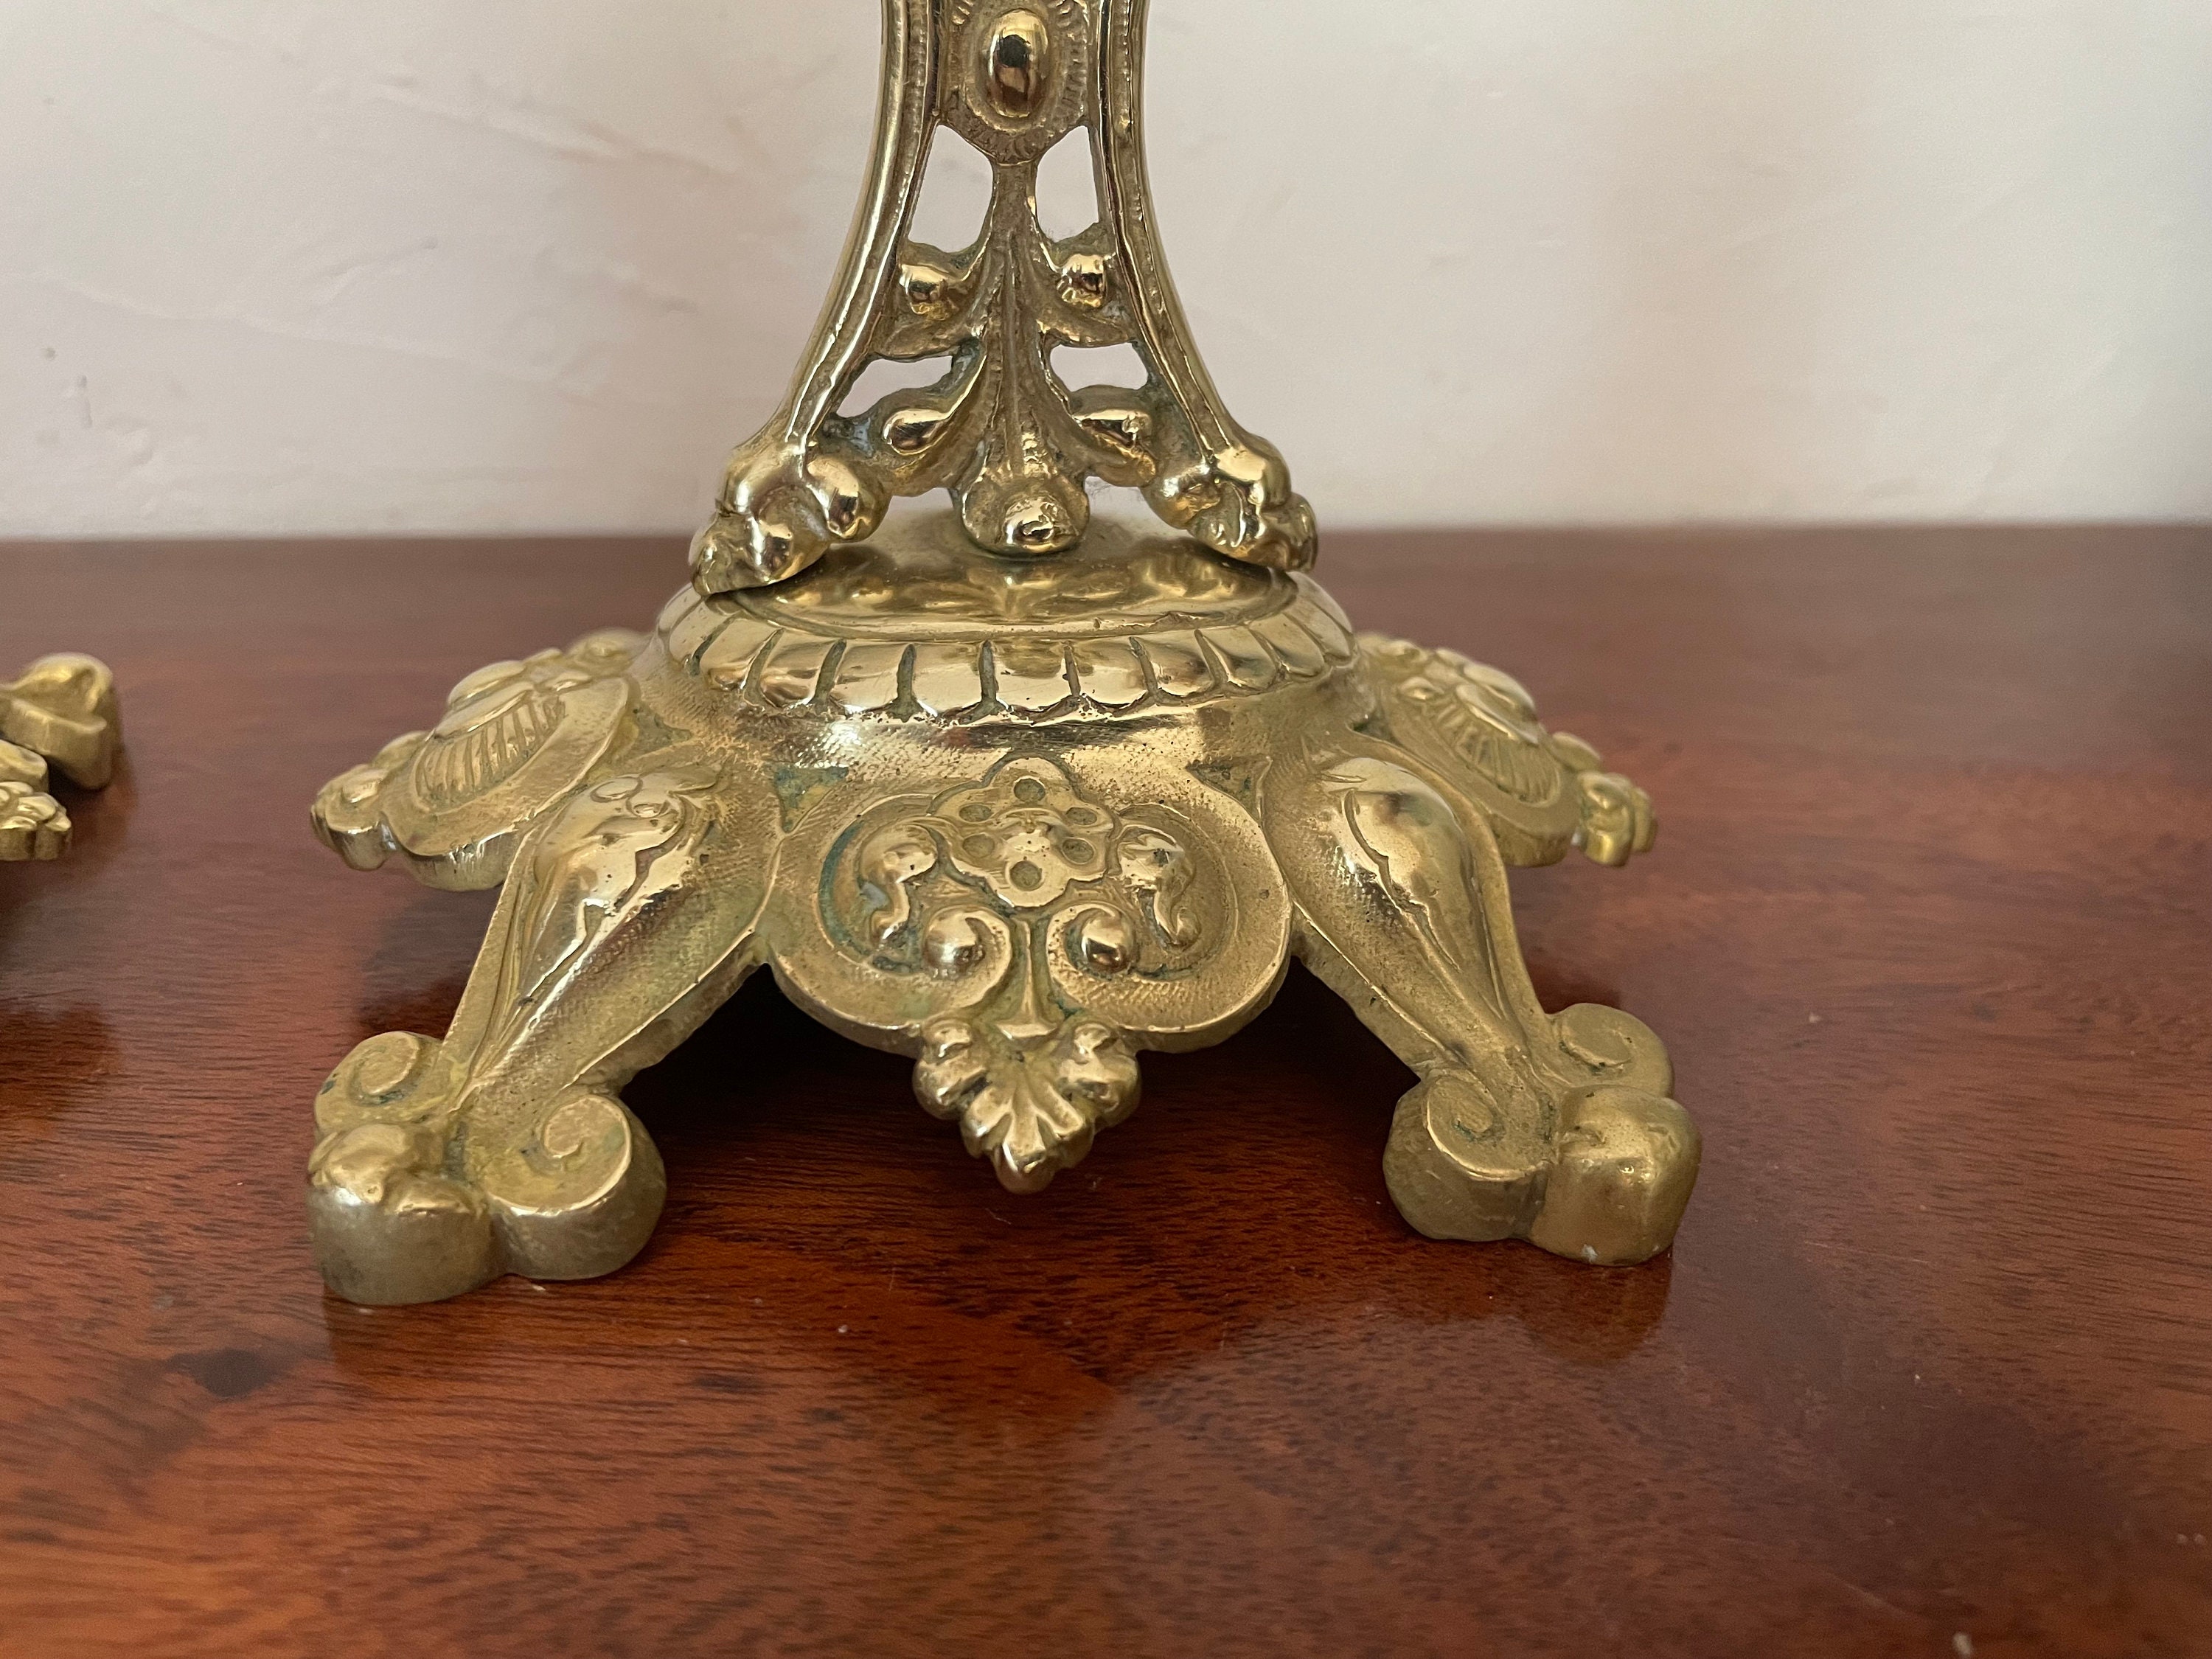 Gilt bronze candle holders, 19th century - Prinsheerlijk Antiek / Antiques